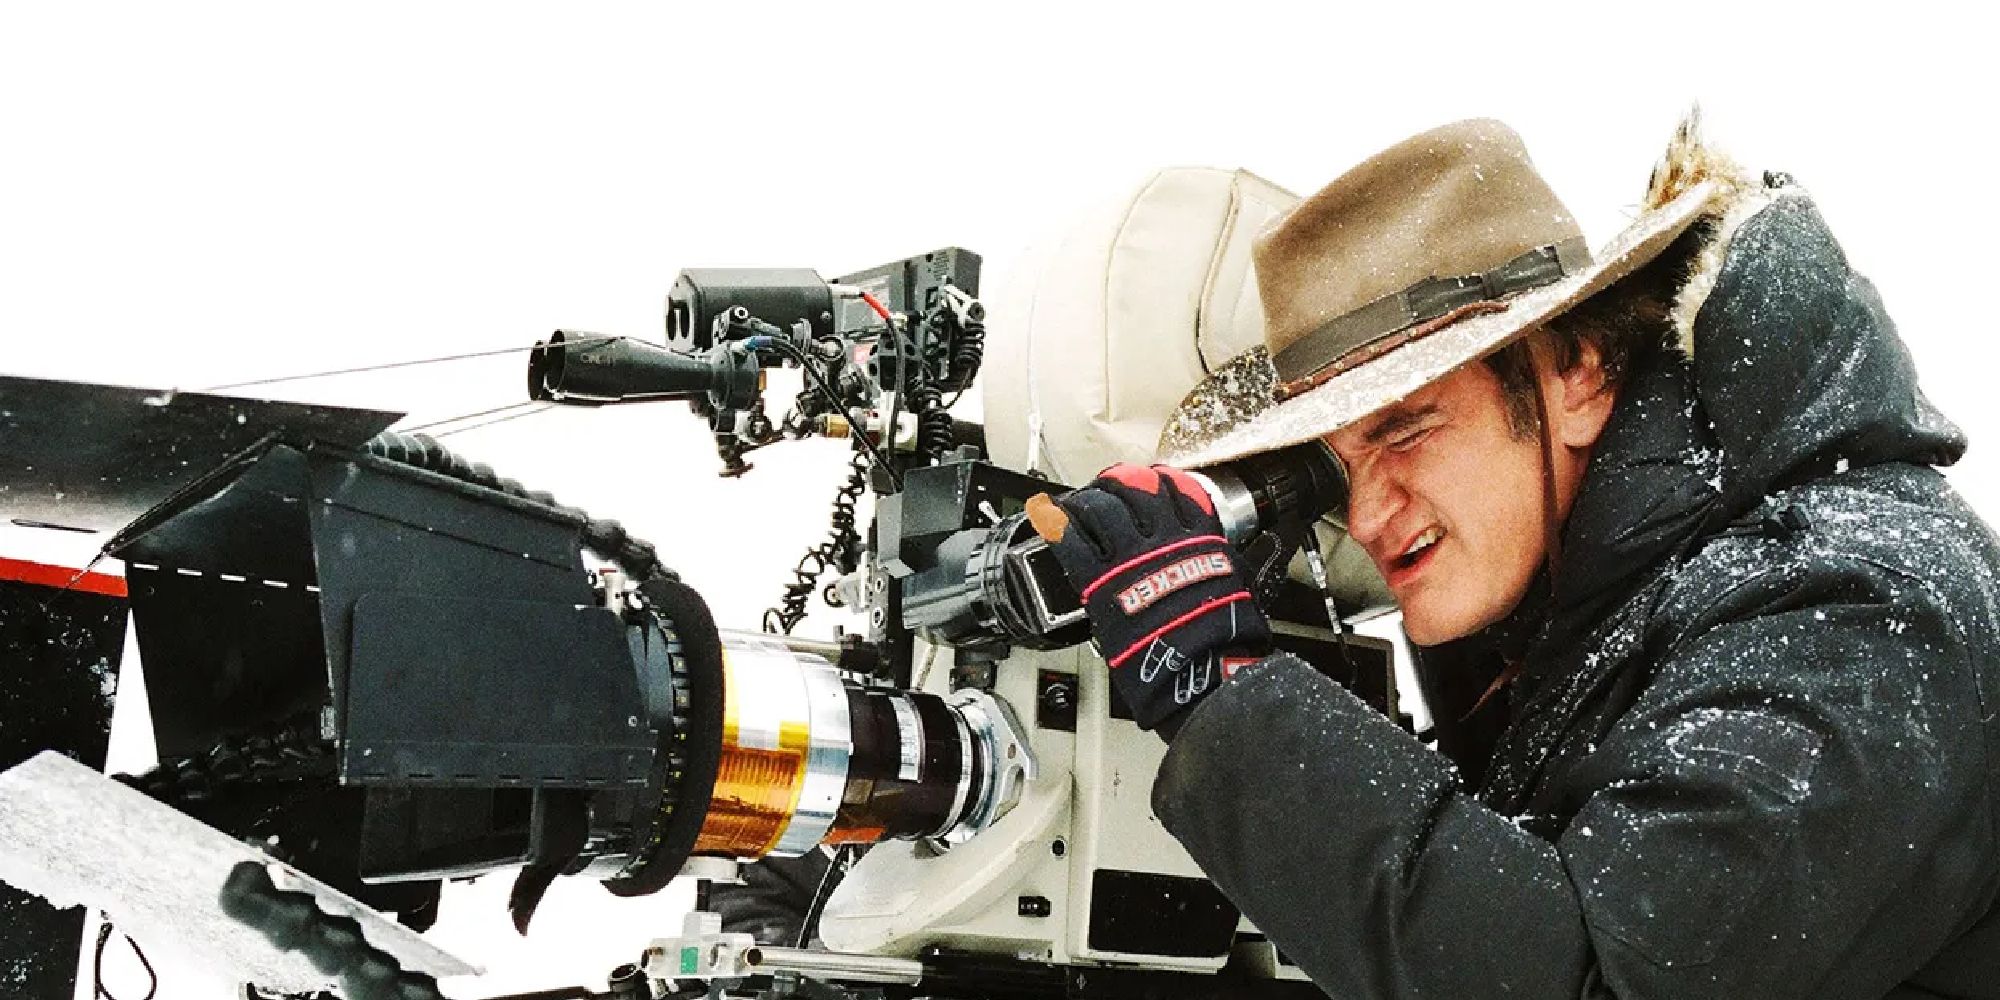 Quentin Tarantino directing